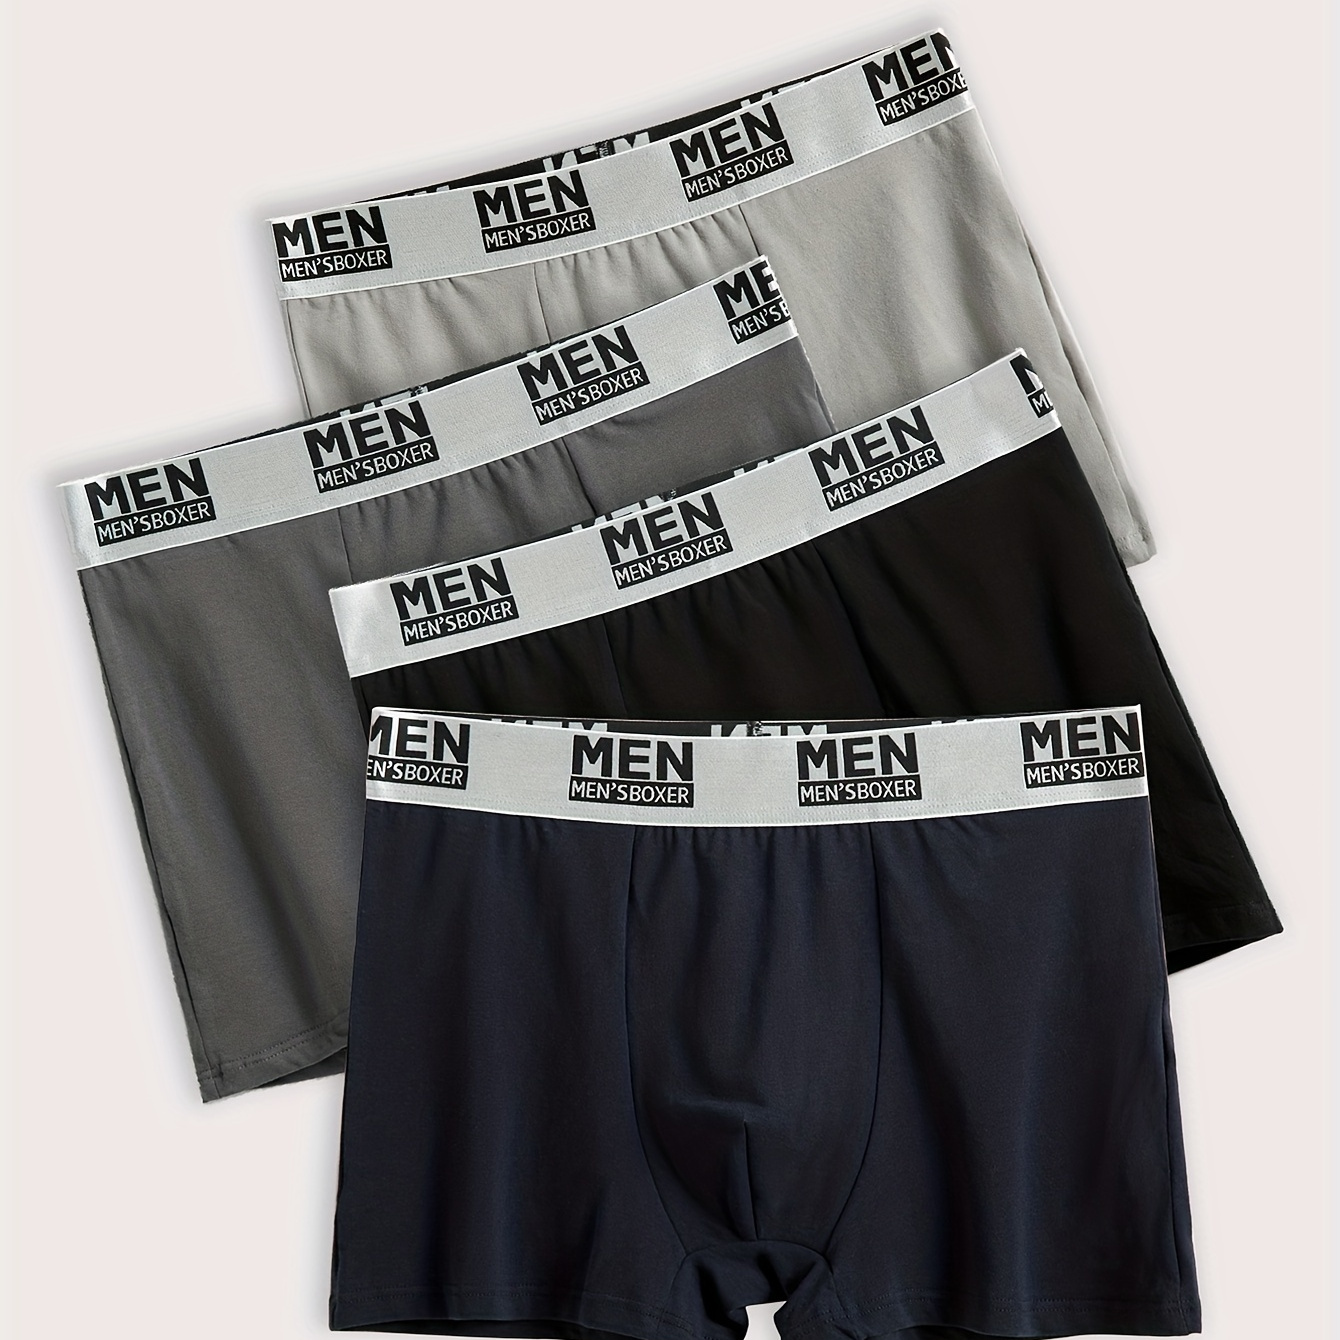 

4pcs Men's Fashion Cotton Breathable Soft Comfy Elastic Waistband Boxer Briefs Shorts, Men's Underwear